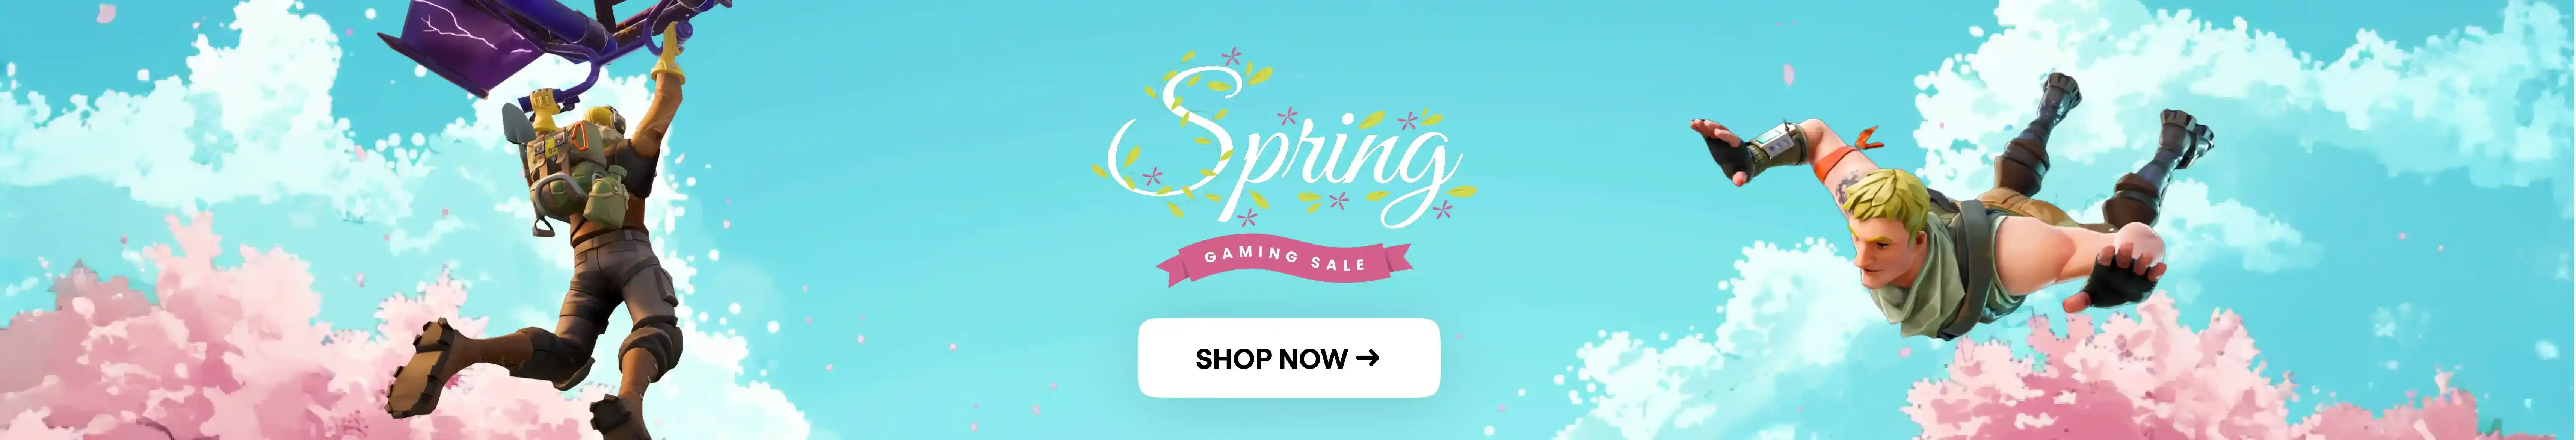 Spring Sale Desktop